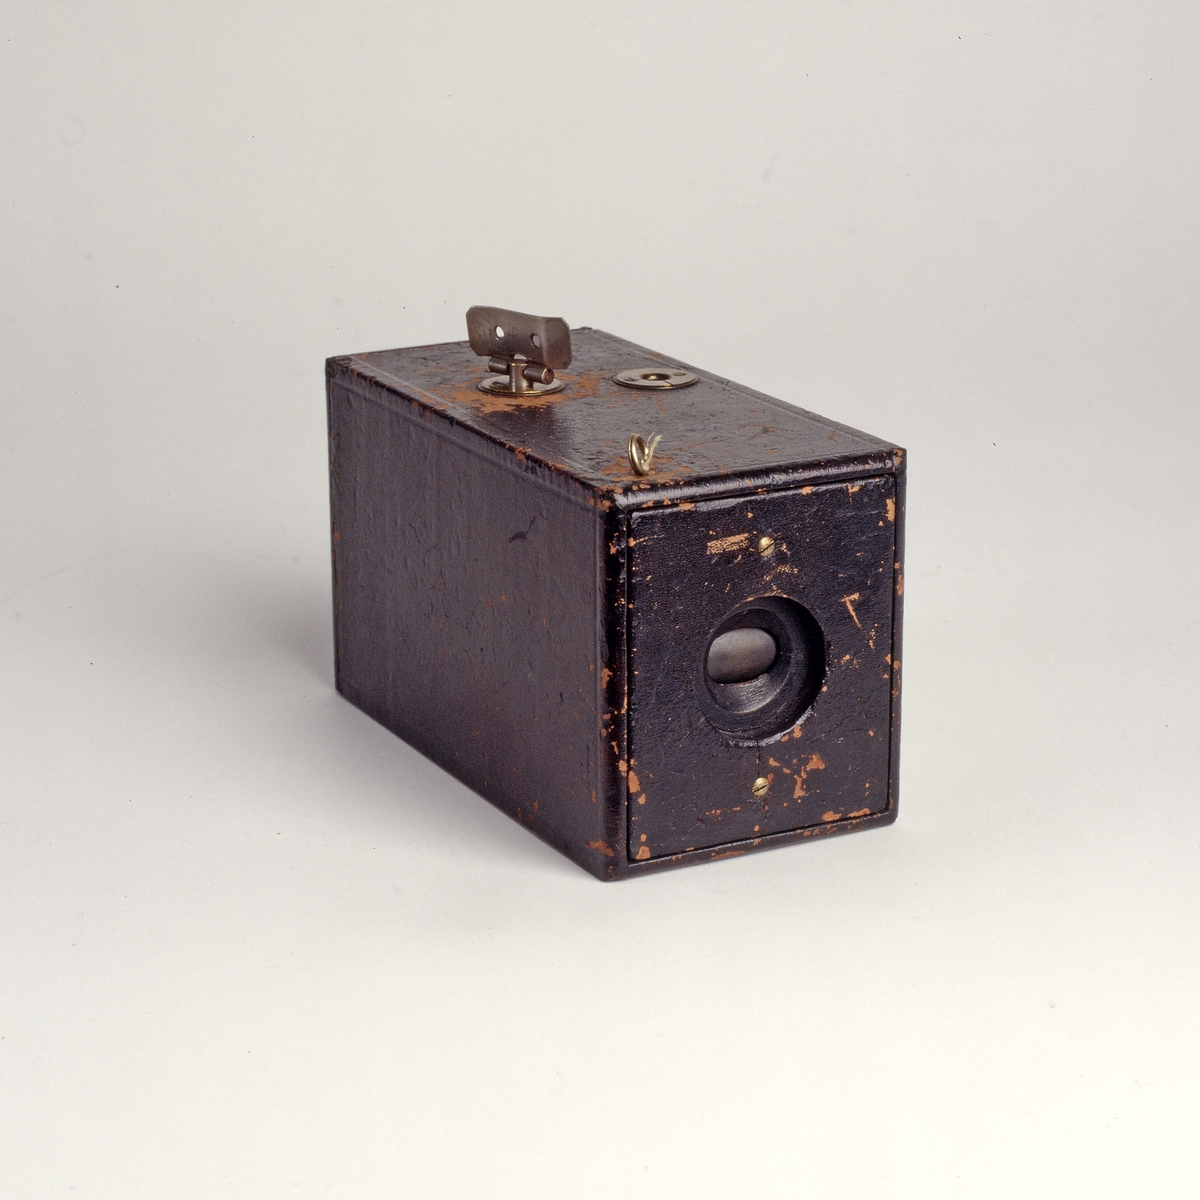 Eastman Kodak Company, grunnlagt av George Eastman (1854-1932), ble etter hvert giganter på kamera og film. Målsetningen til selskapet var å gjøre fotograferingen enklere og mer populært, blant annet ved å introdusere kameraer som var lette å håndtere. Et av slagordene som selskapet brukte, var: «you push the button, we do the rest». «The Kodak» ble patentert den 4. september 1888, og skulle gjøre det mulig for folk uten teknisk kompetanse å ta bilder og skape minner for livet. 
Dette var det første kameraet som brukte rullfilm (mot den rådende glassplaten), og dermed en hel revolusjon i fotografiets historie. Kameraet hadde ingen muligheter for innstilling, og heller ingen søker å se gjennom for å sjekke motivet, kun en vinkel risset inn på oversiden av kameraet som indikerte retningen. Bildene som ble produsert med disse kameraene var runde, lik linsens utsnitt, og et trill rundt bilde skjuler skjeve horisonter og gjorde det til en takknemlig oppgave for amatører å fange verden i et bilde. 